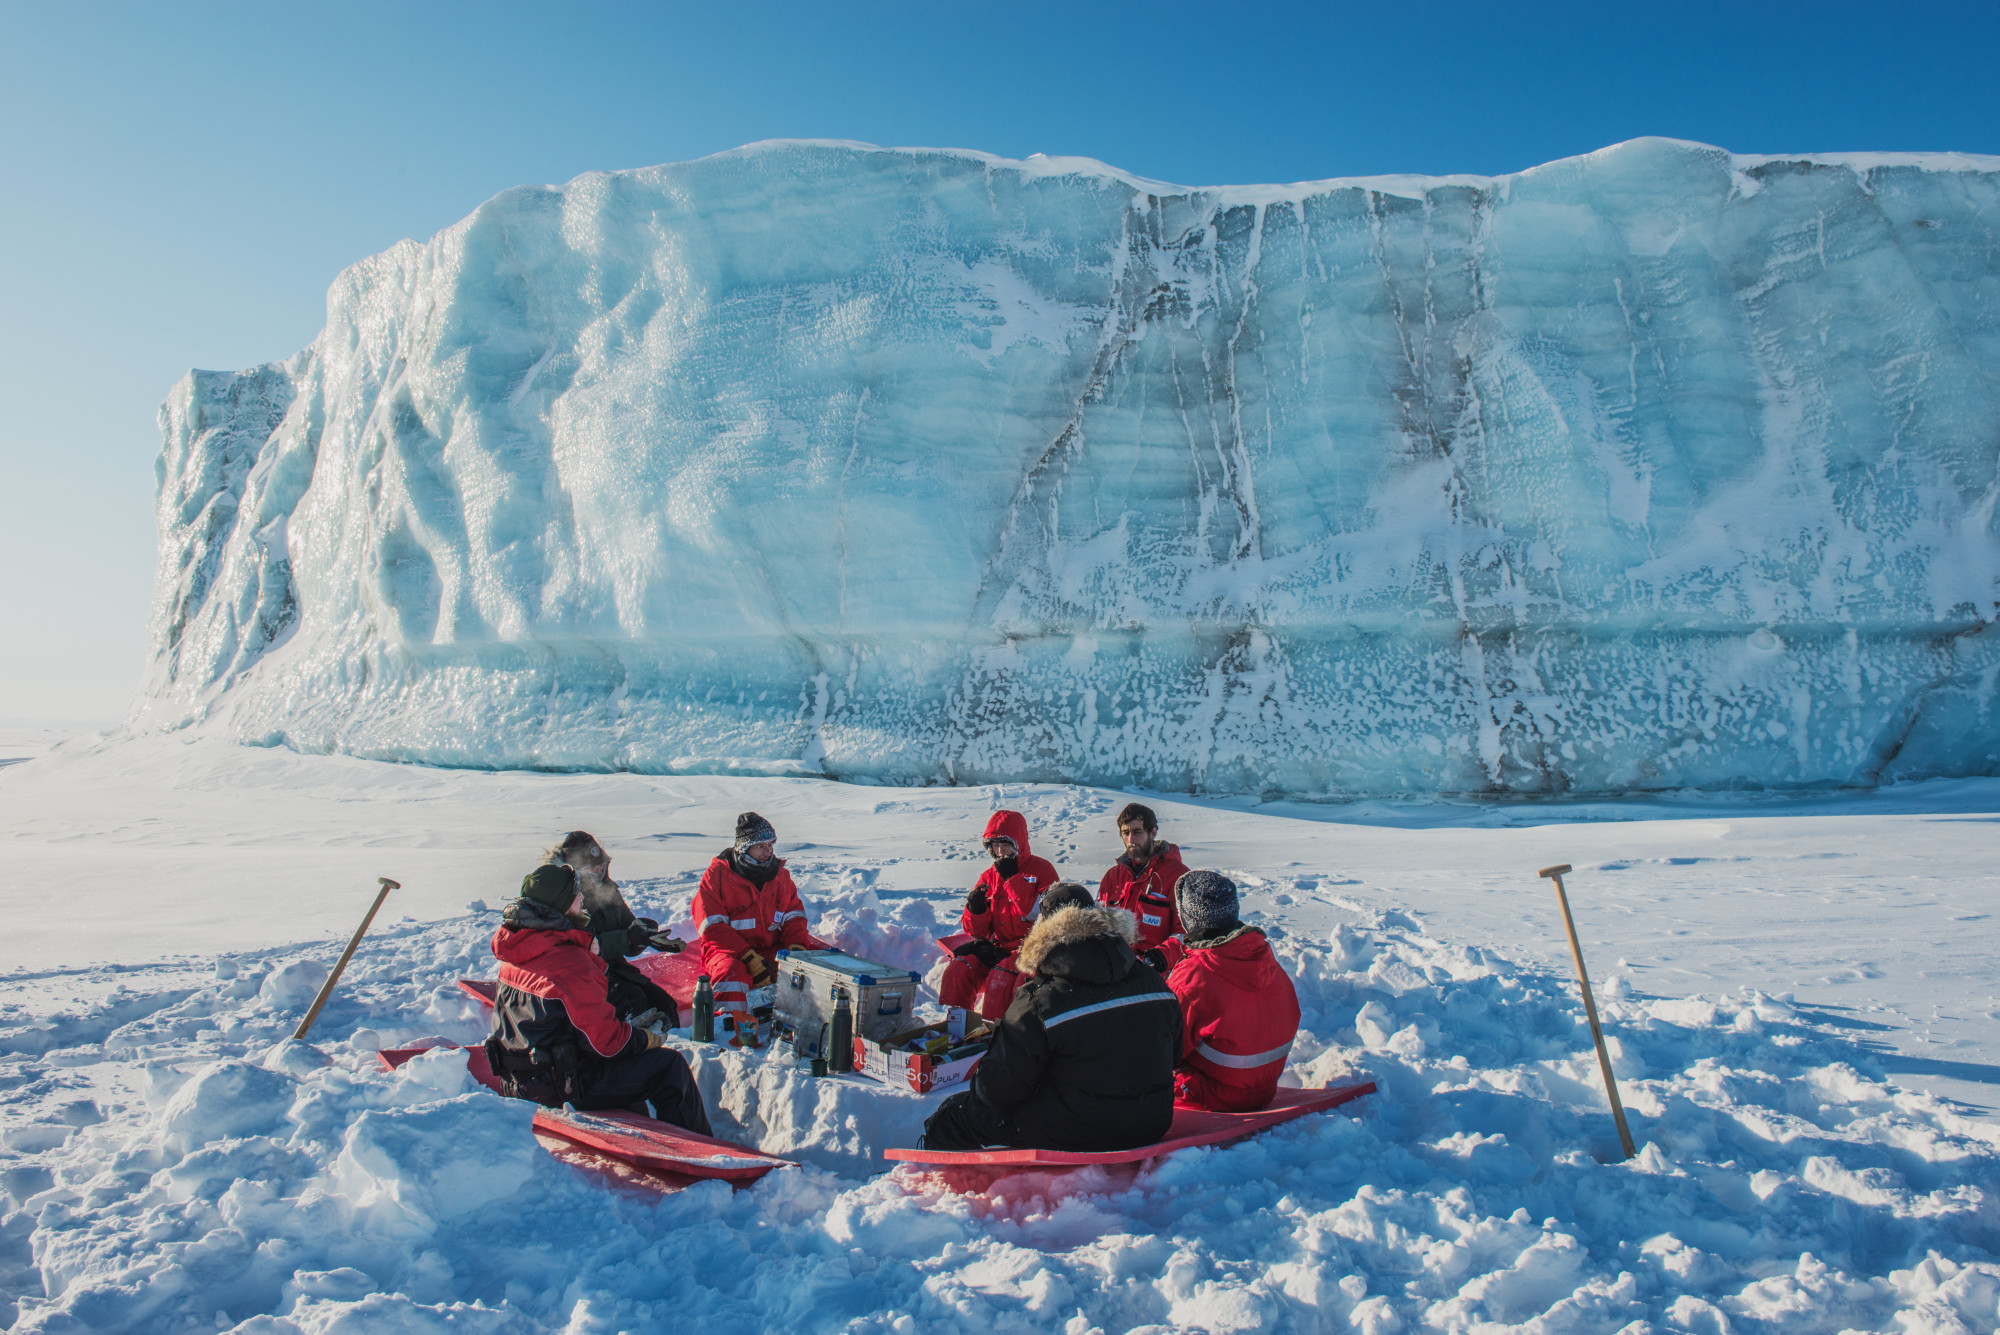 Ebédszünet egy jéghegy mellett Grönlandon 2018 tavaszán.